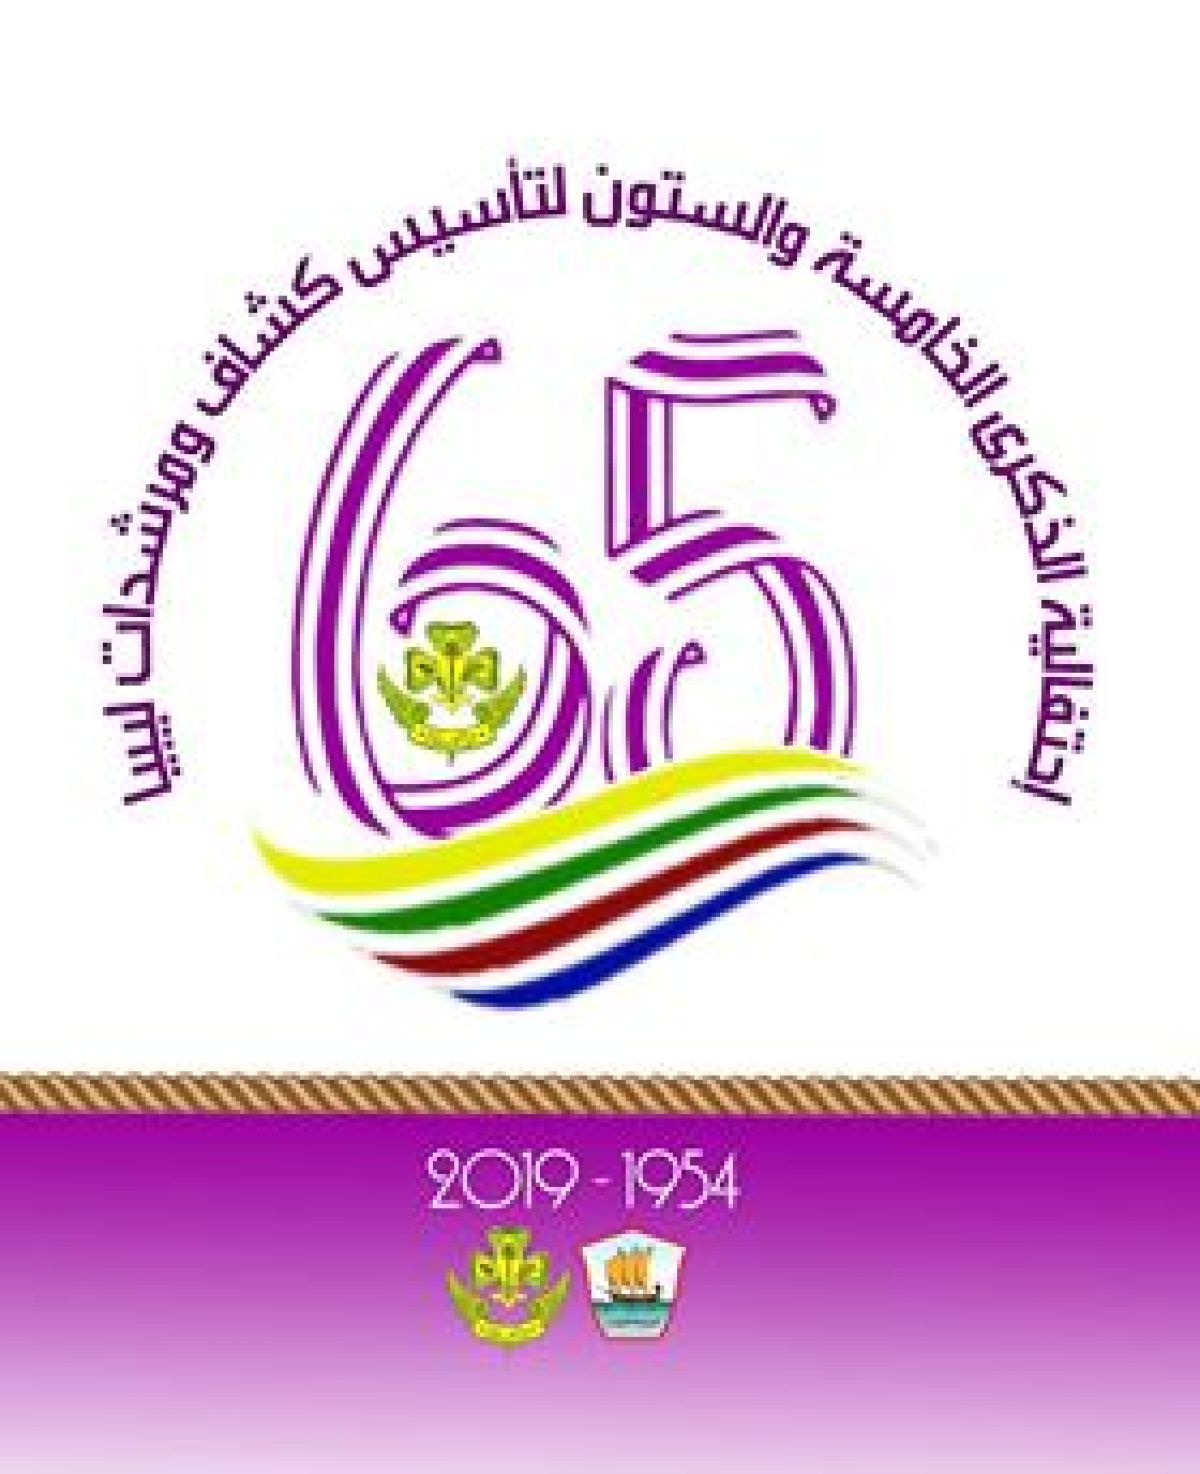 حركة كشاف ومرشدات ليبيا تستعد للذكرى 65 لتأسيسها